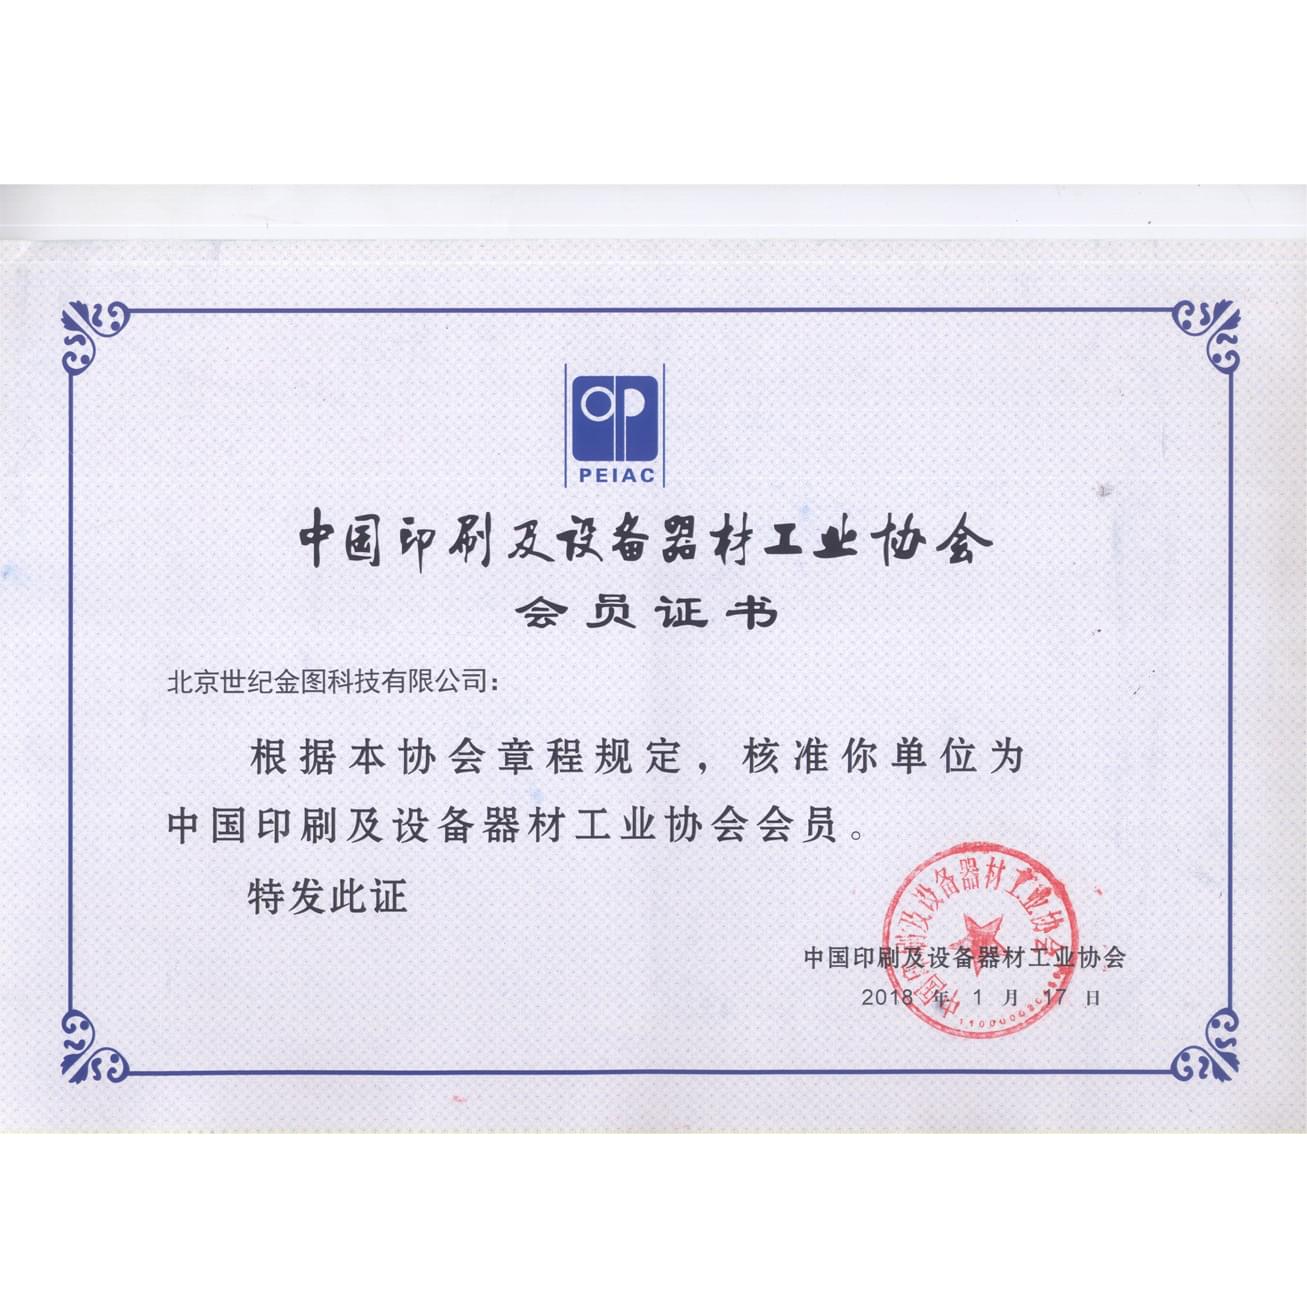 中国印刷及设备器材工业协会会员证书